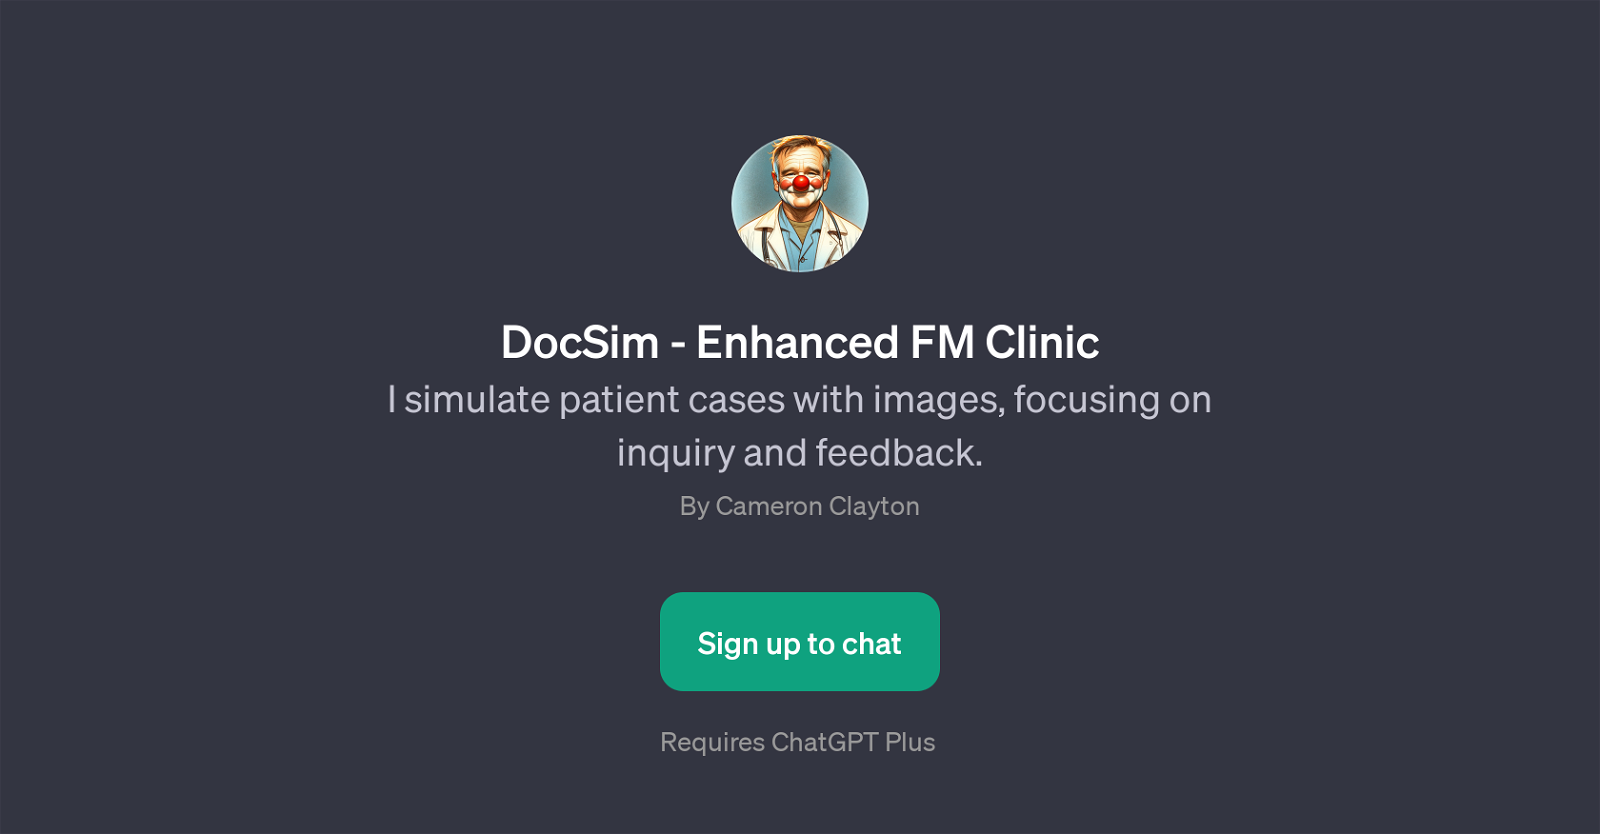 DocSim - Enhanced FM Clinic website